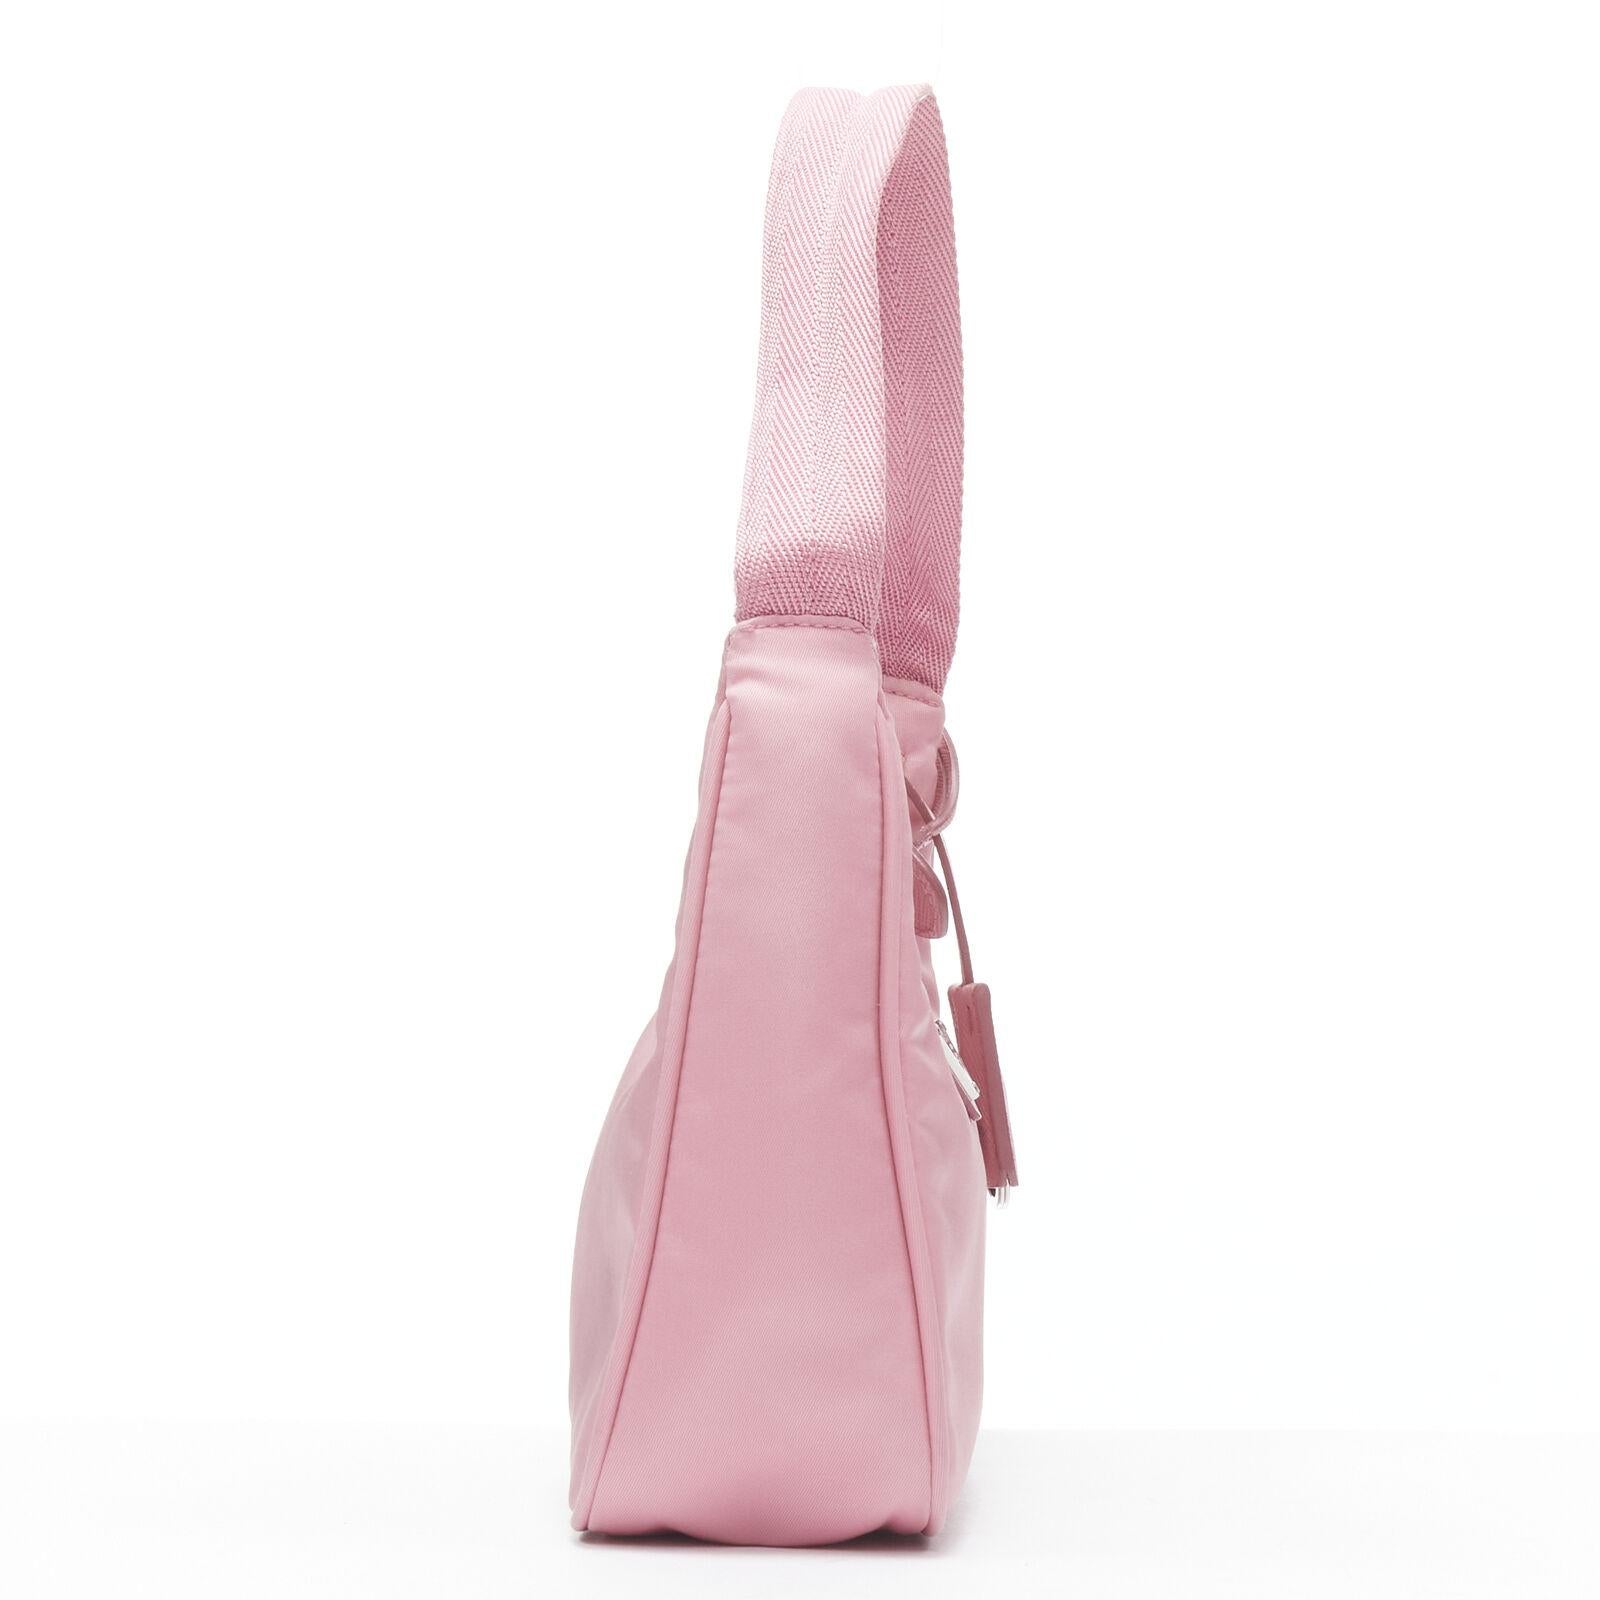 PRADA Re Edition 200 pink Tessuto Nylon saffiano trim underarm bag 6